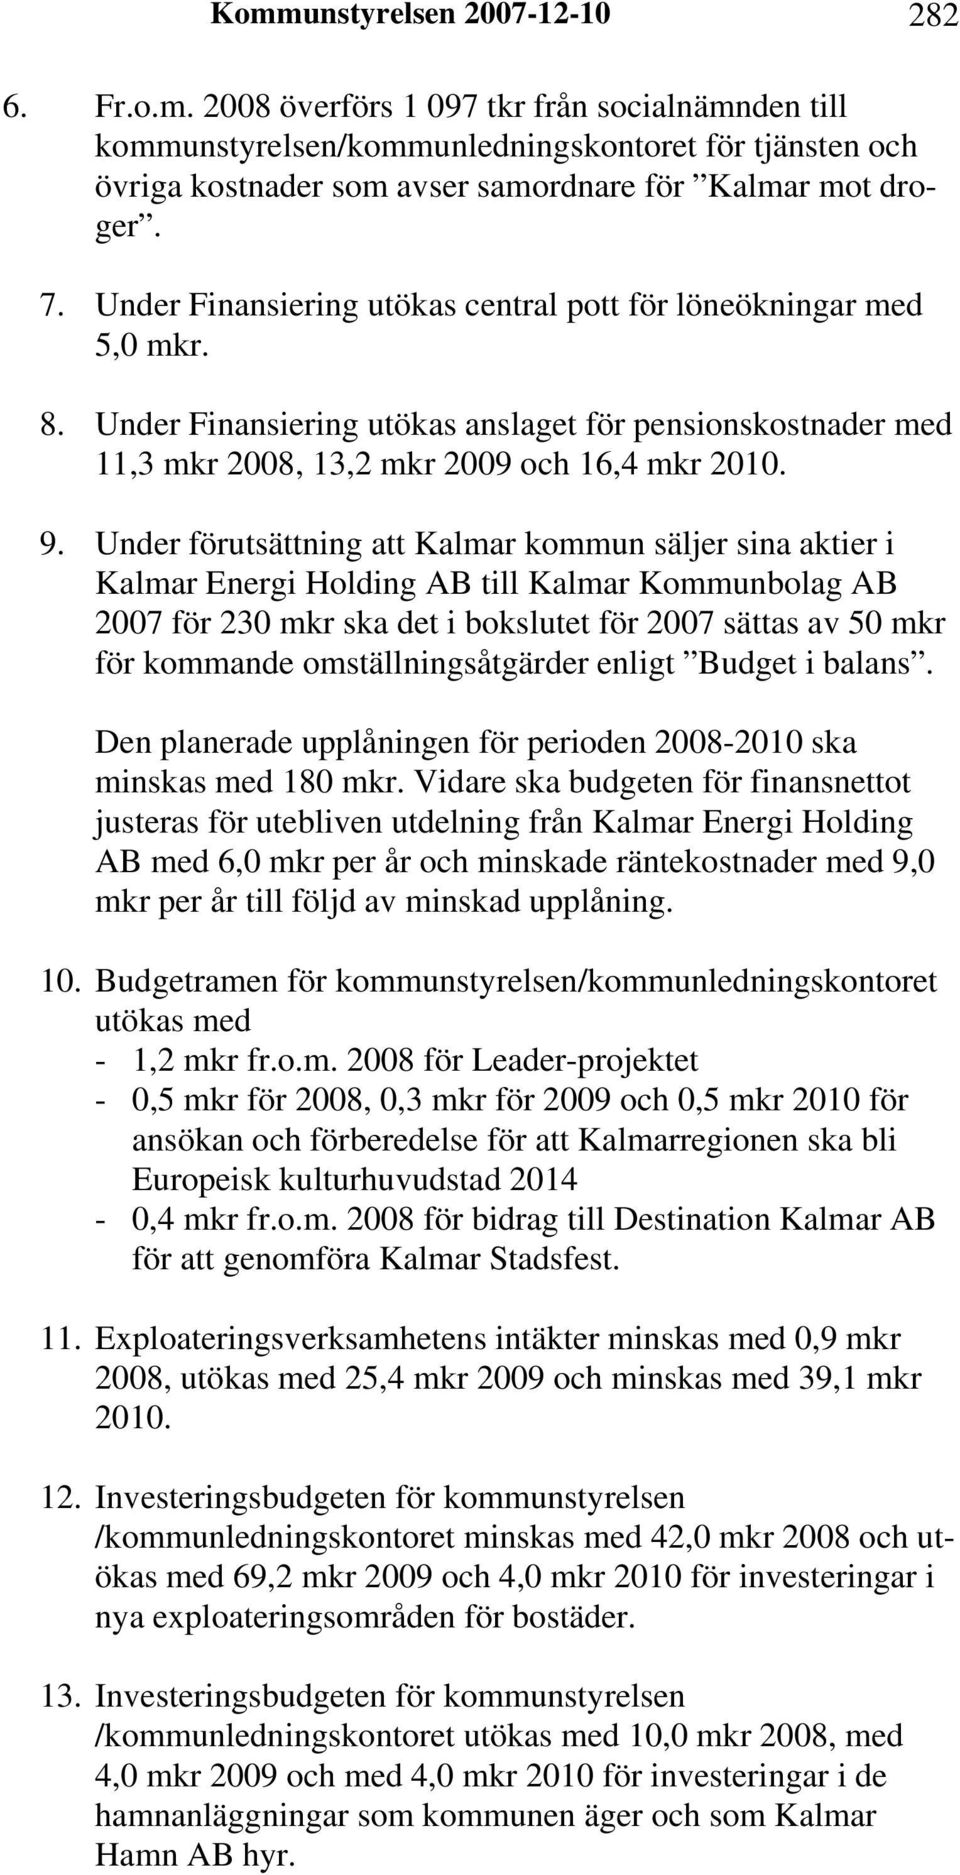 Under förutsättning att Kalmar kommun säljer sina aktier i Kalmar Energi Holding AB till Kalmar Kommunbolag AB 2007 för 230 mkr ska det i bokslutet för 2007 sättas av 50 mkr för kommande